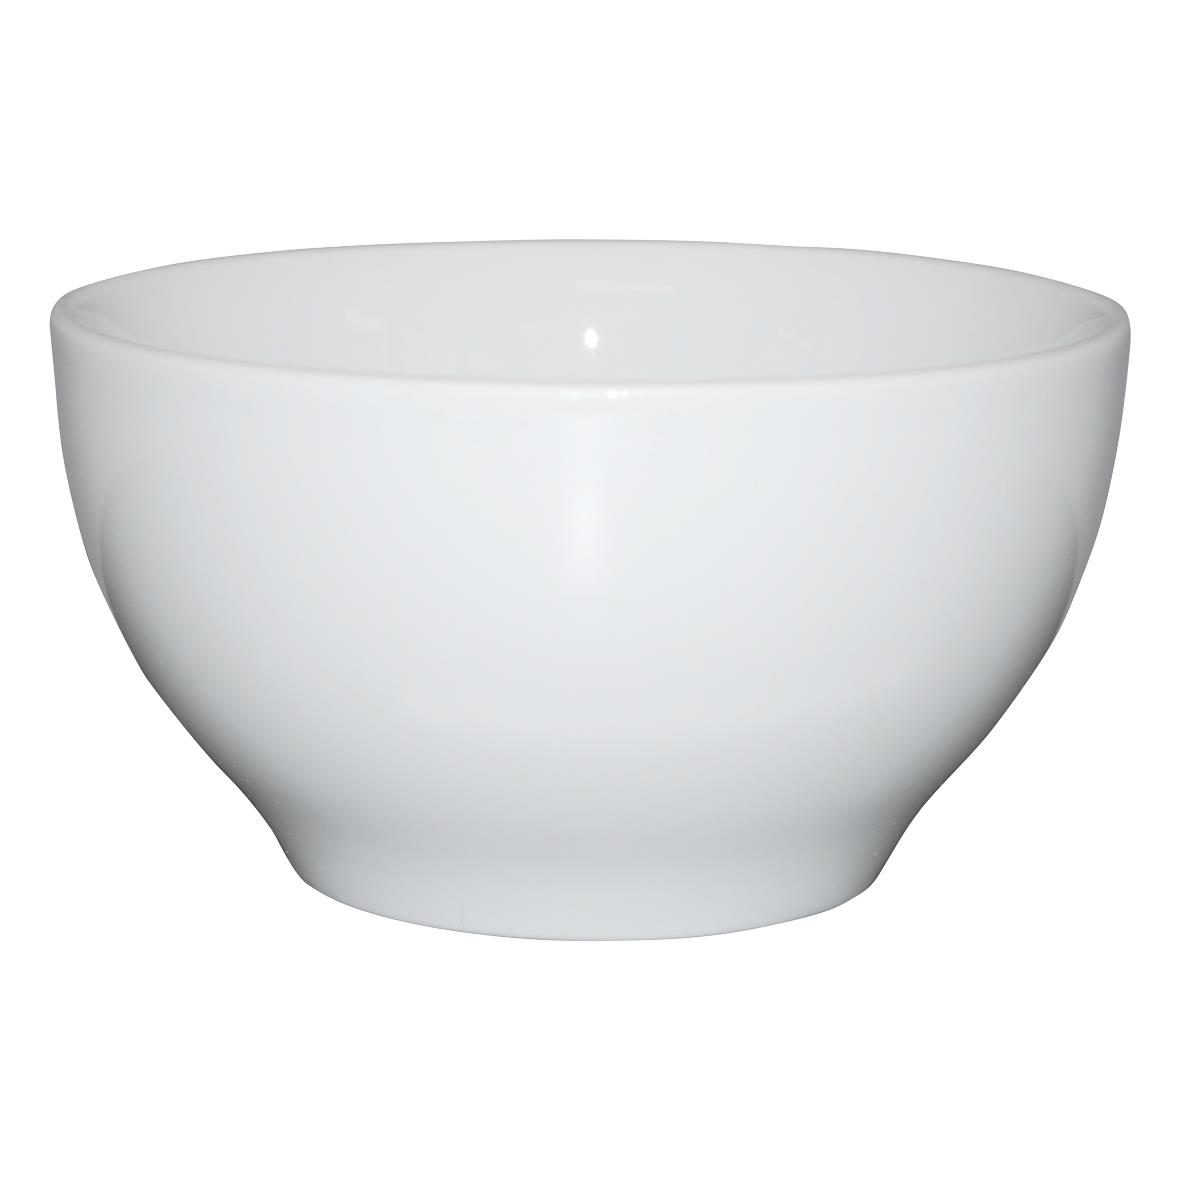 Option zum Bedrucken der Bowl White mit einem Durchmesser von 13,5 Zentimetern